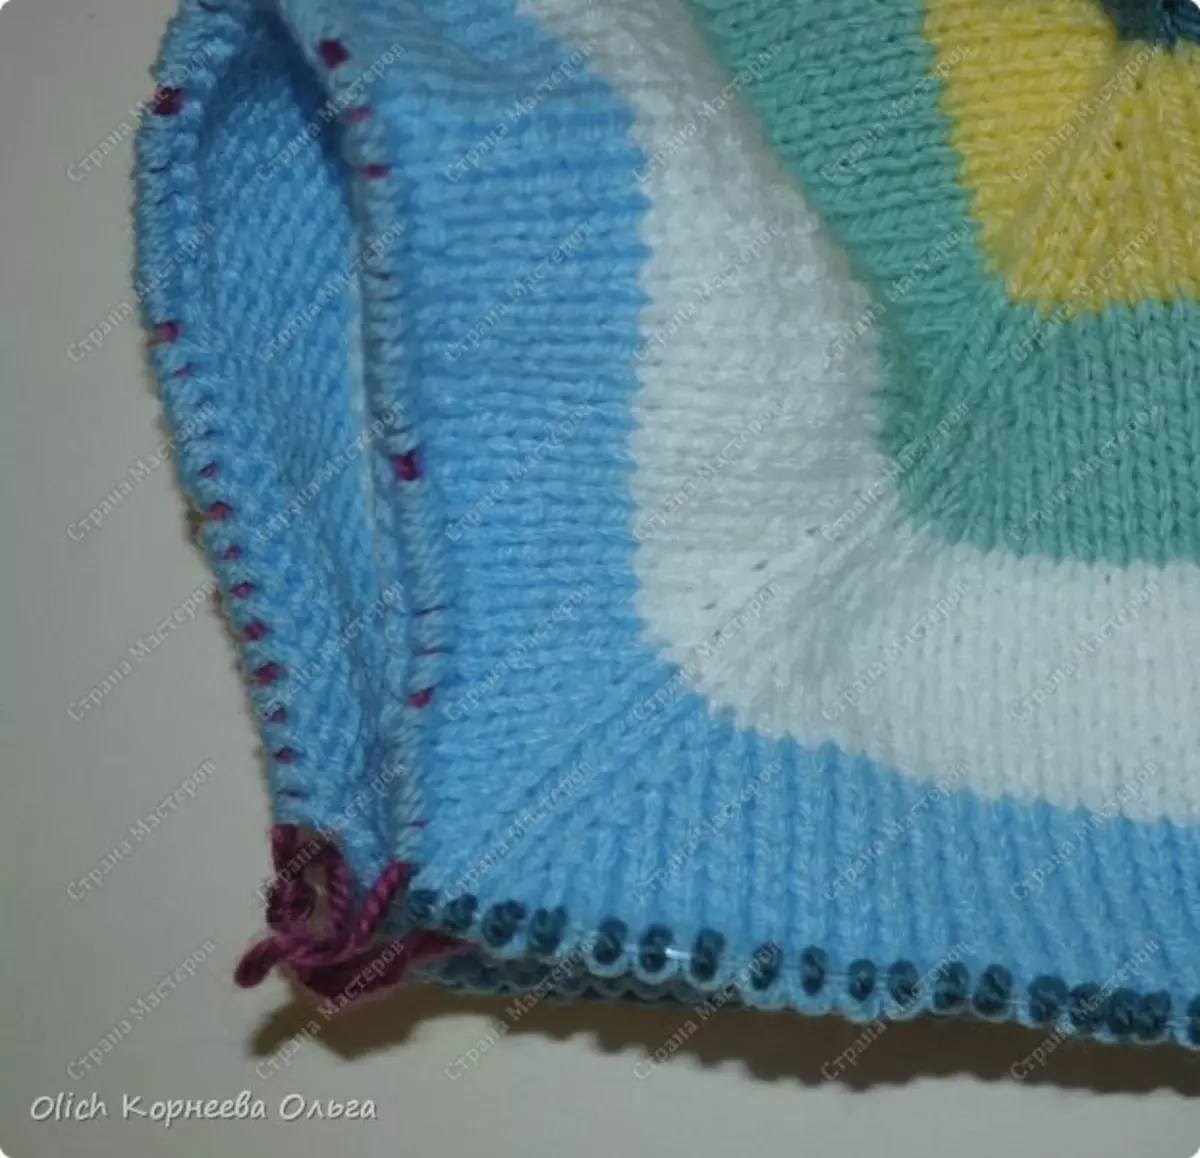 Knitted goed: Circuit regels op knoppen foar famke 5 jier